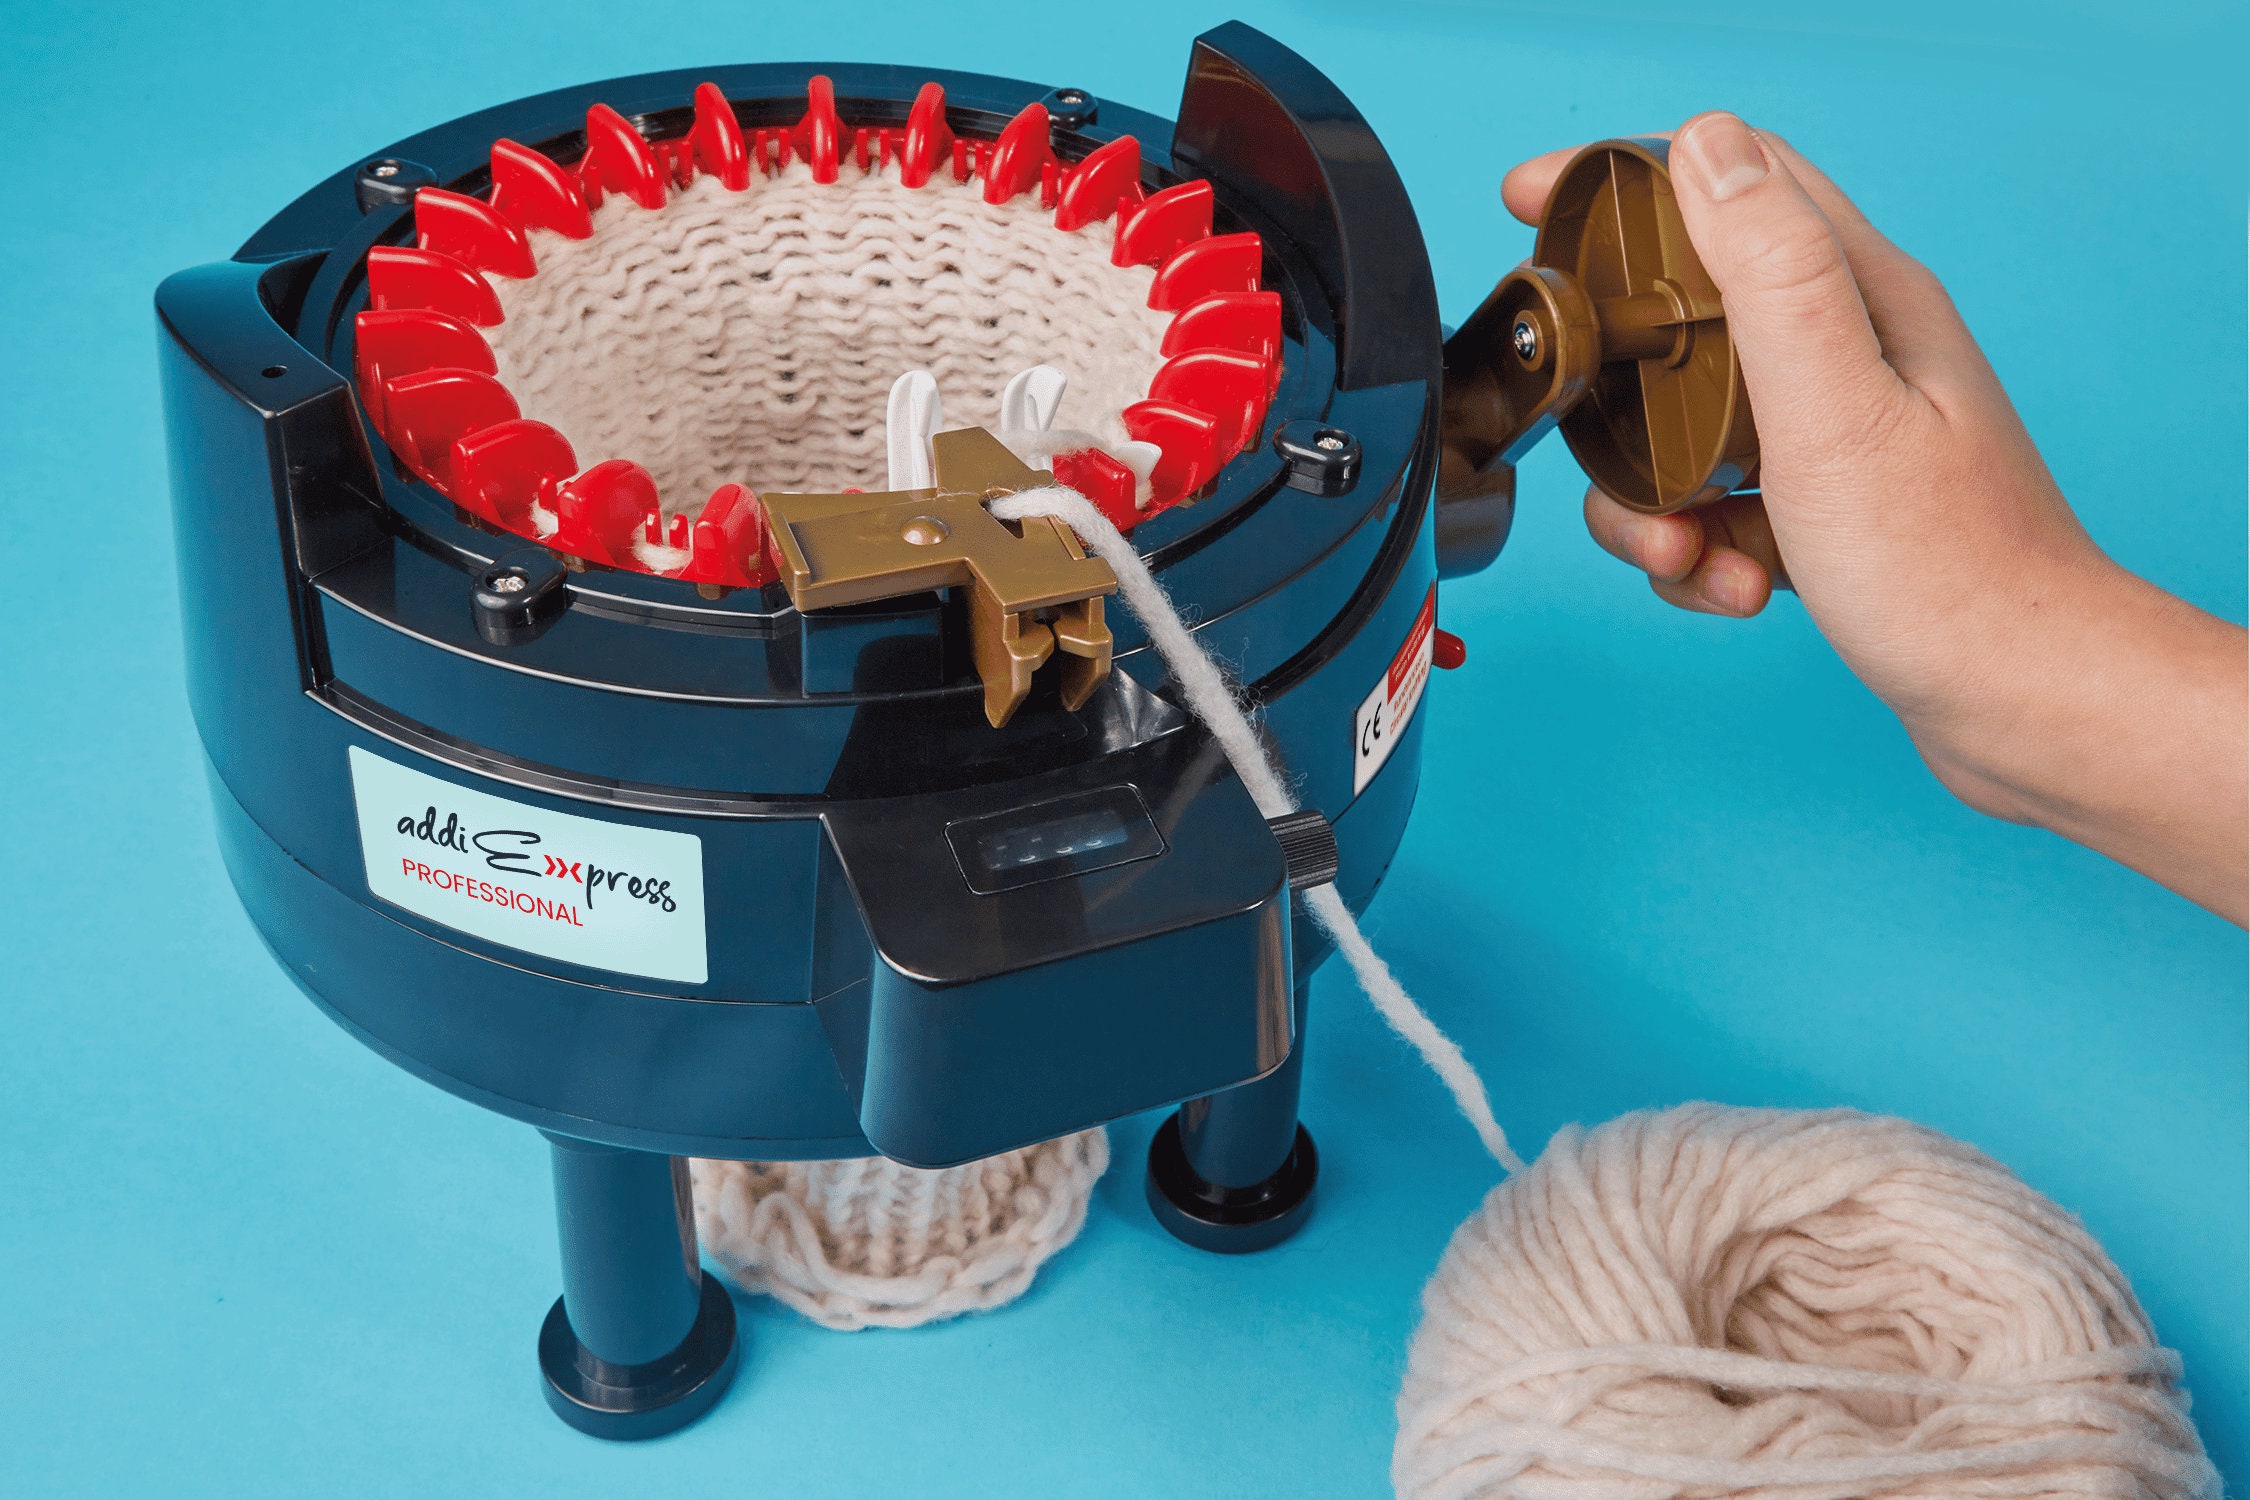 addi Express Professional Knitting Machine – Icon Fiber Arts